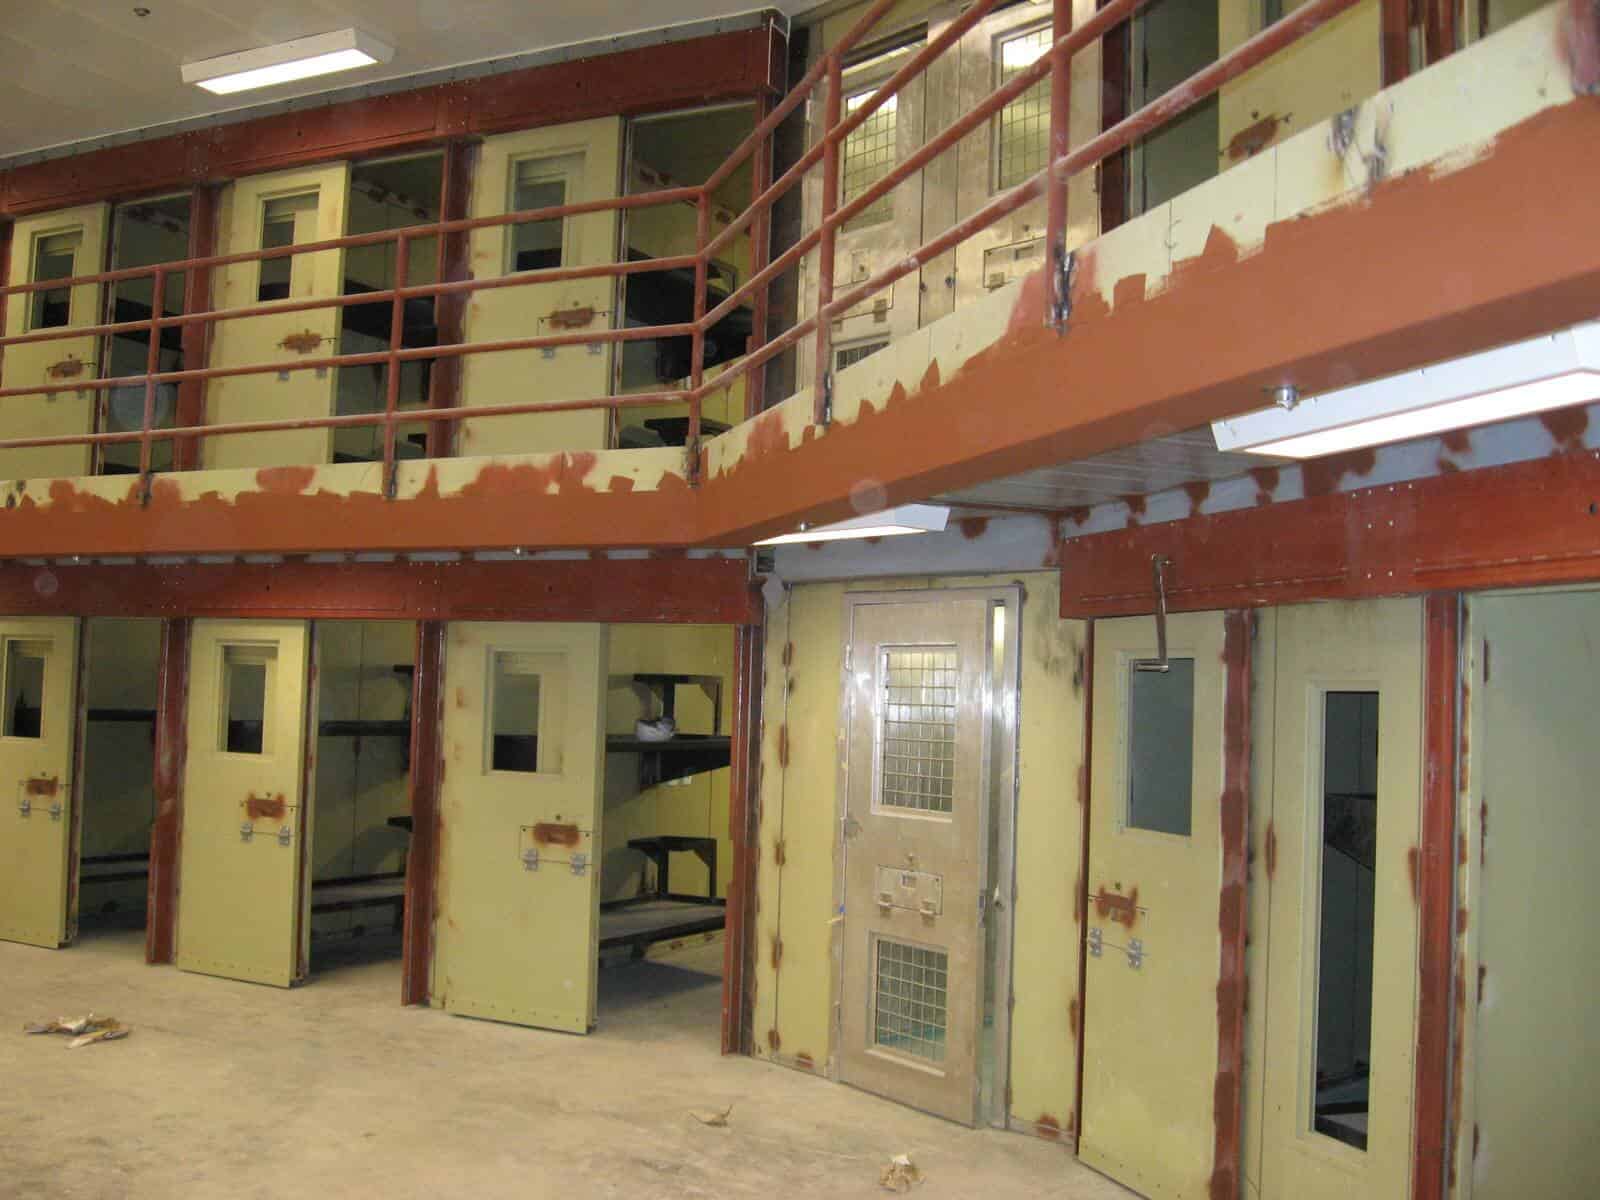 Gunnison Prison 2